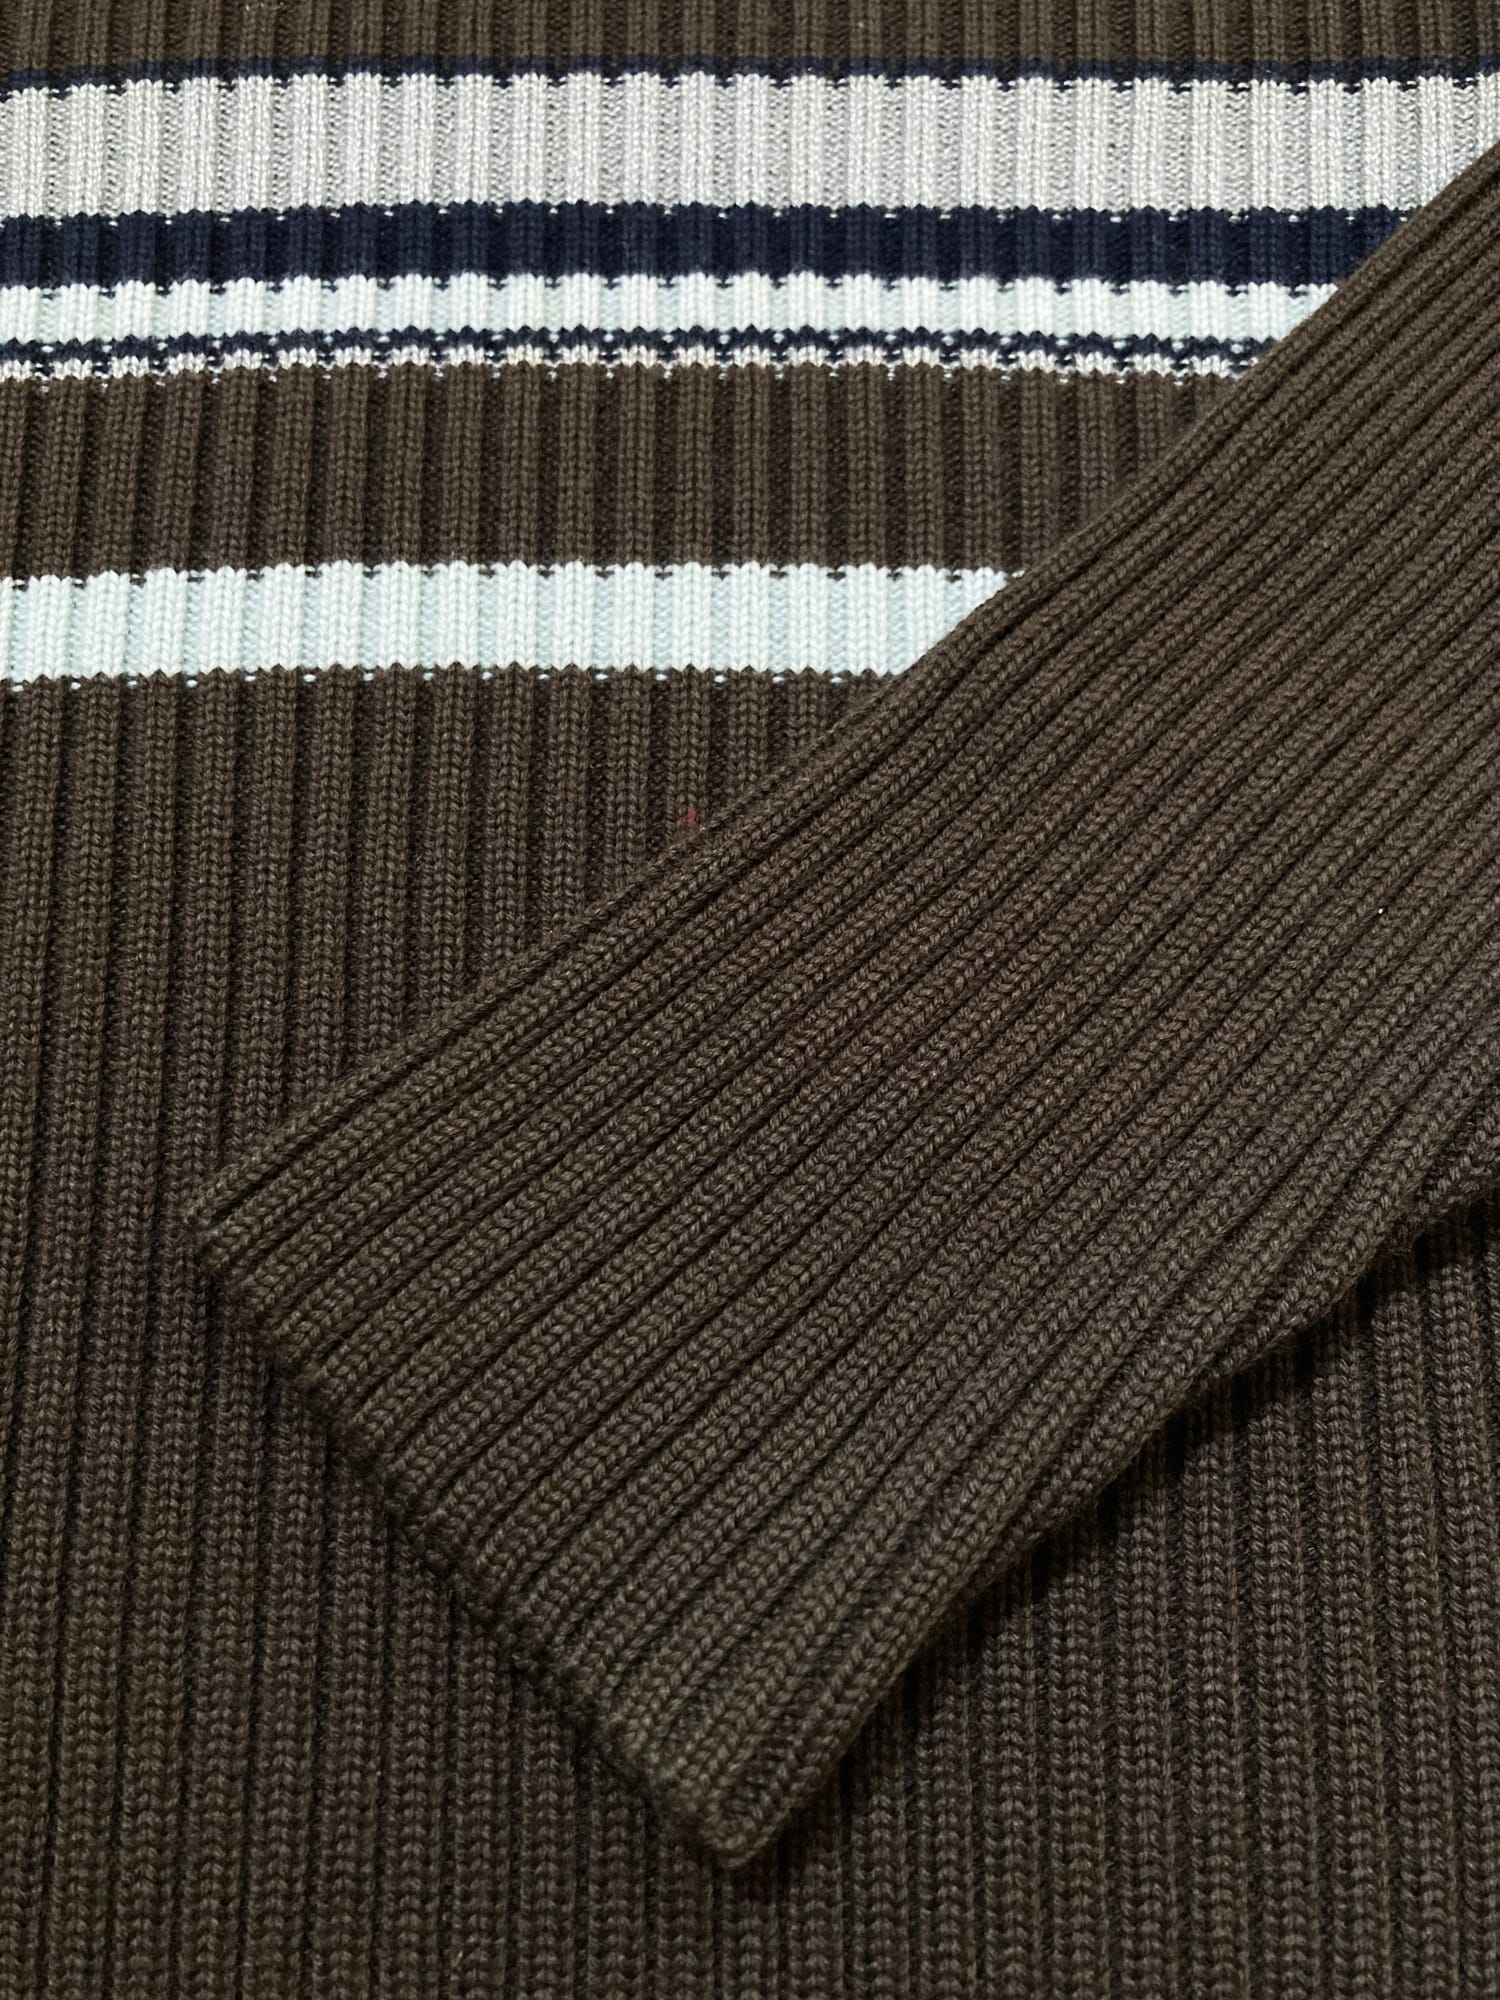 Dirk Bikkembergs brown wool rib knit striped v-neck jumper - S